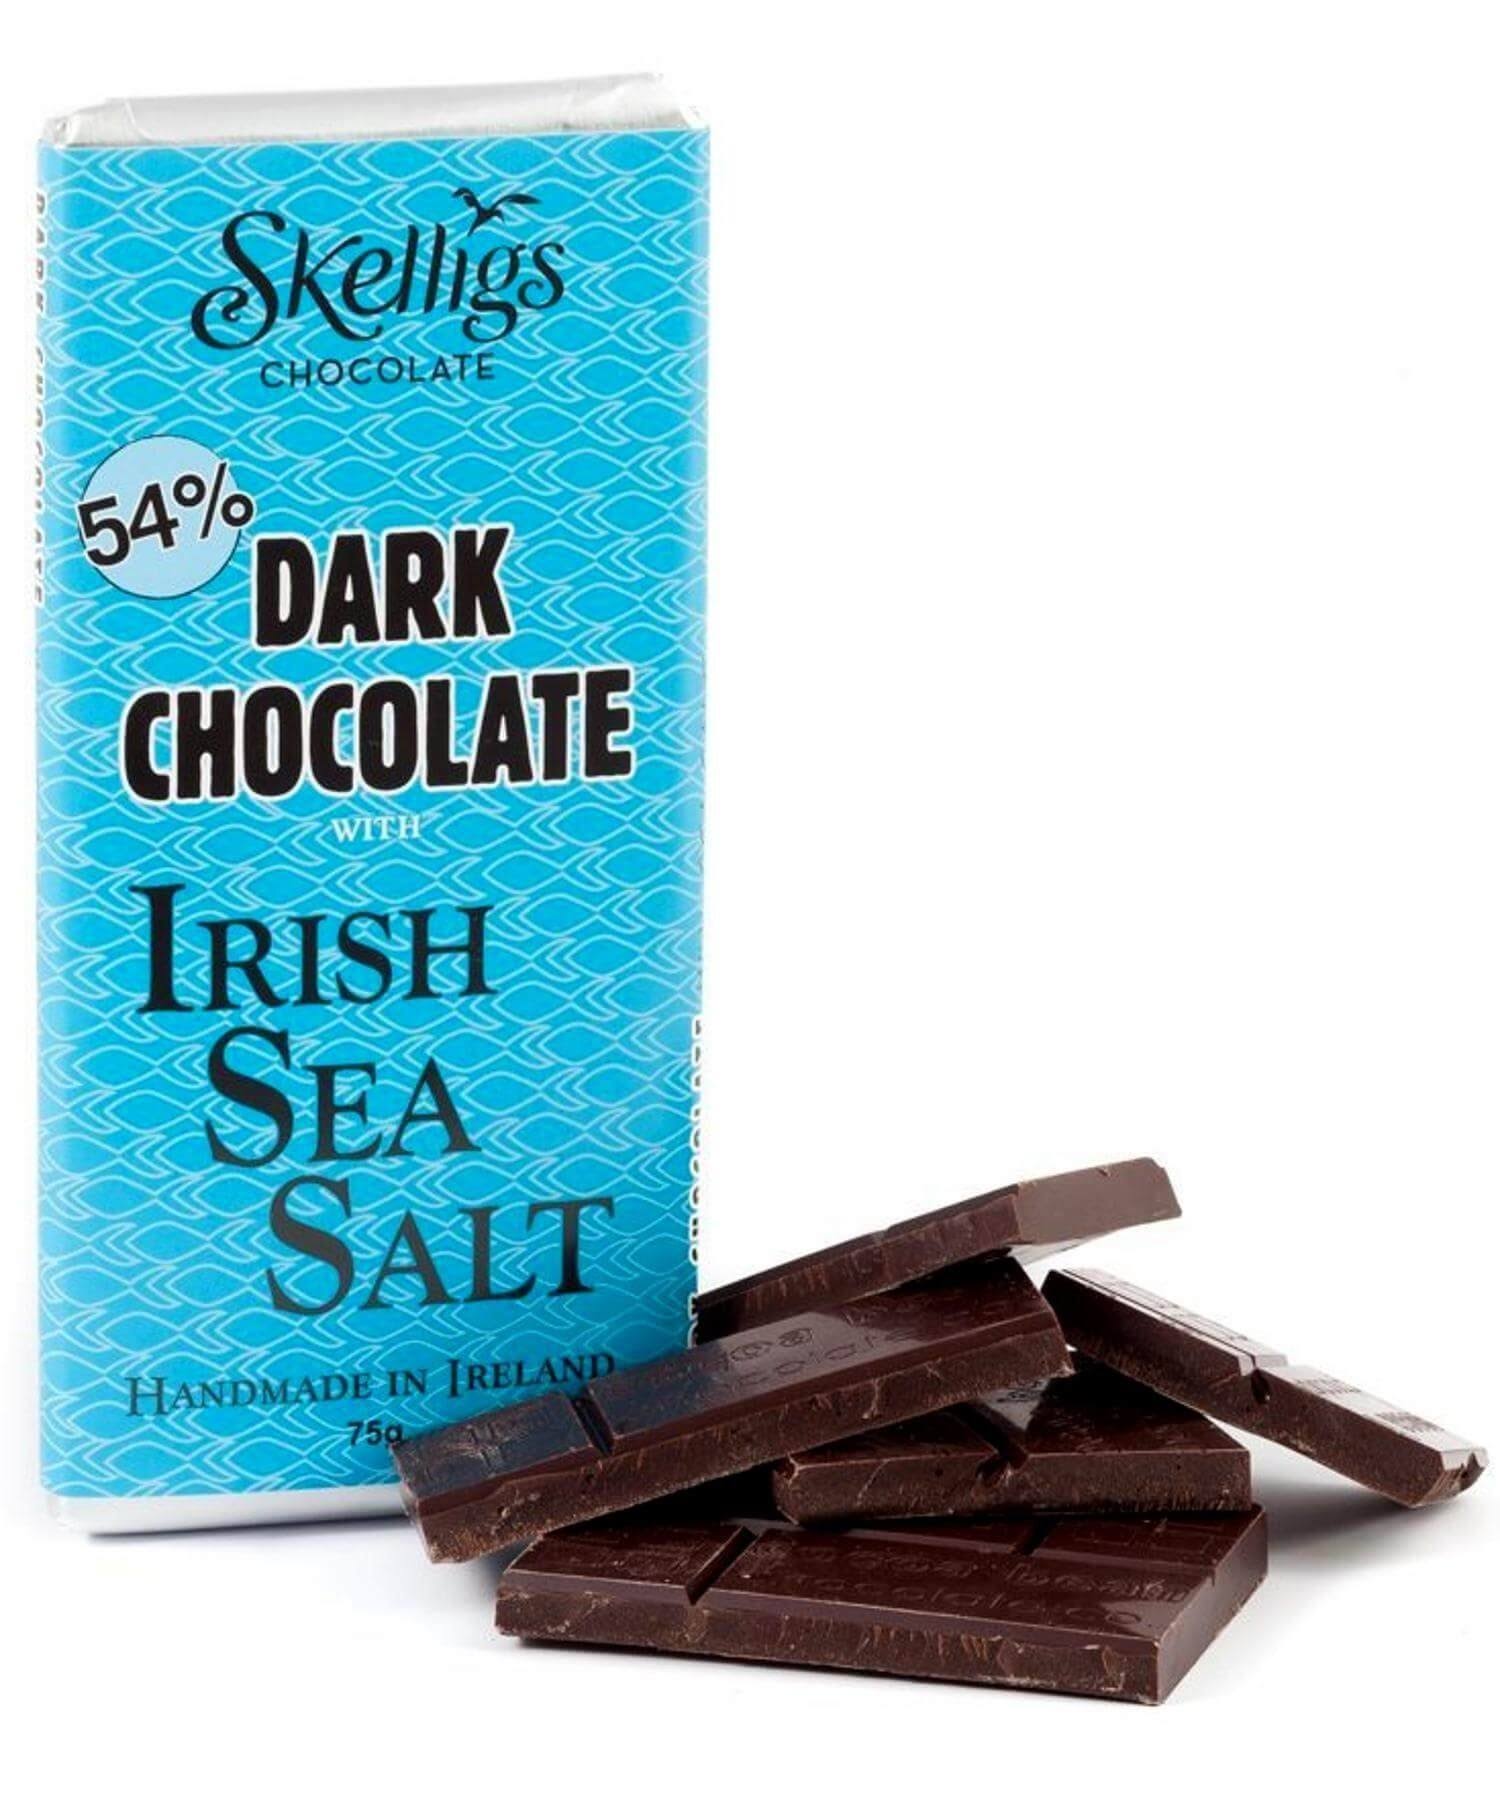 Skelligs Chocolate Co. Sea Salt Chocolate Bar